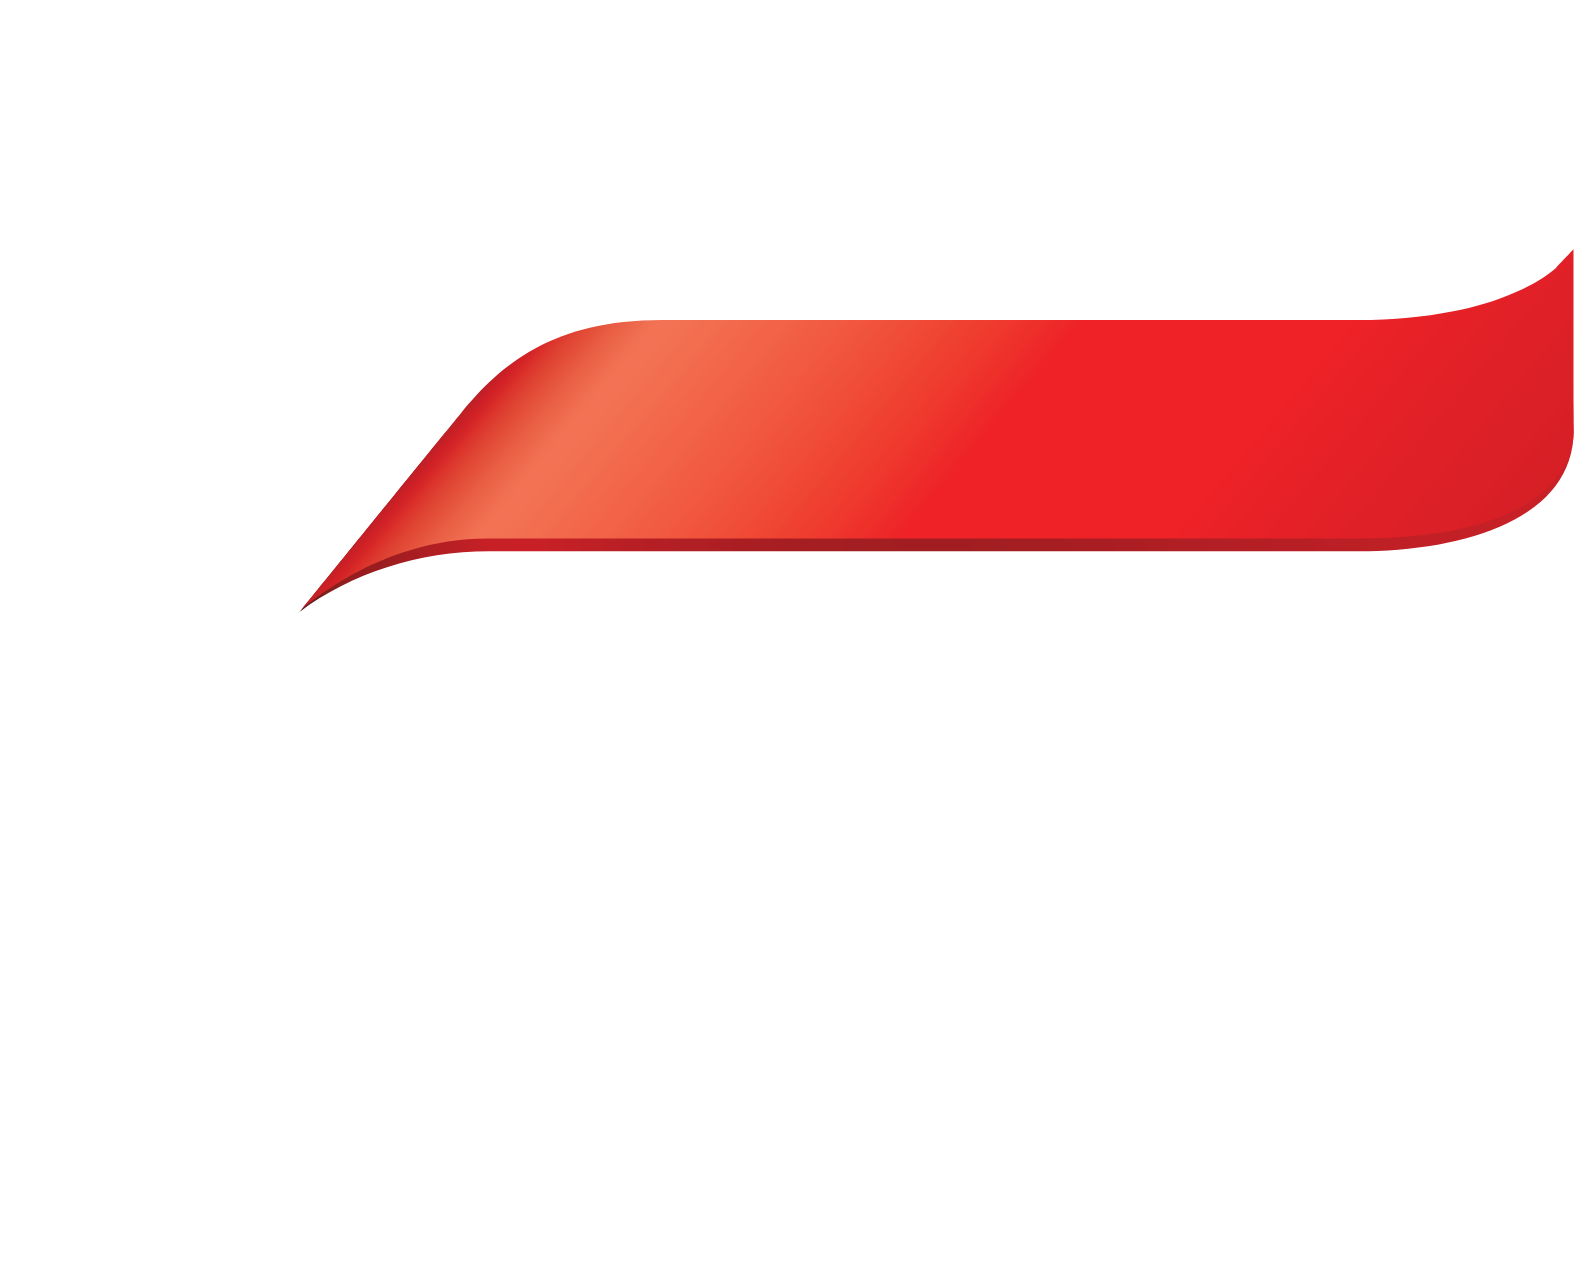 KT Corporation logo pour fonds sombres (PNG transparent)